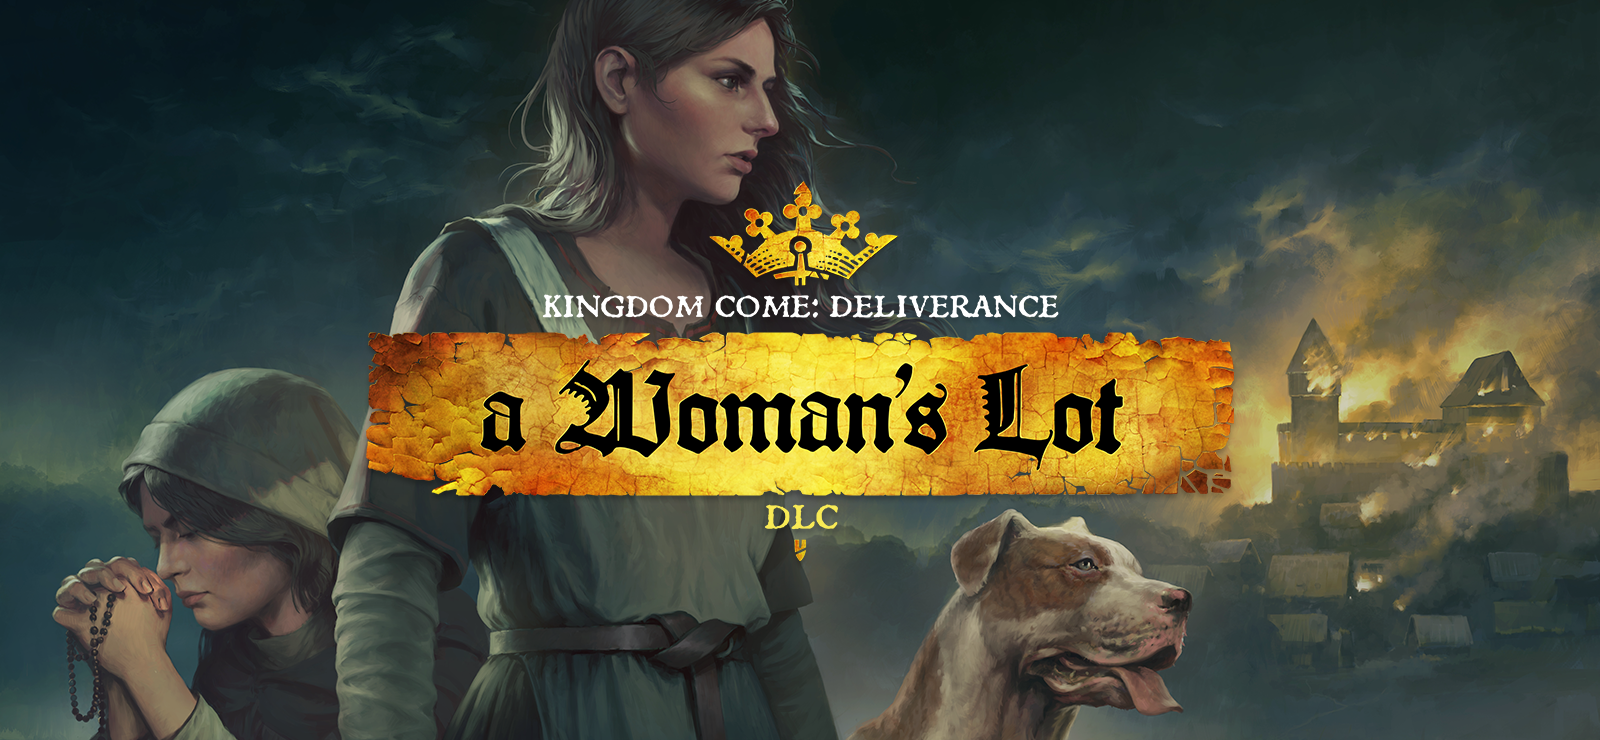 Kingdom Come: Deliverance – A Woman's Lot